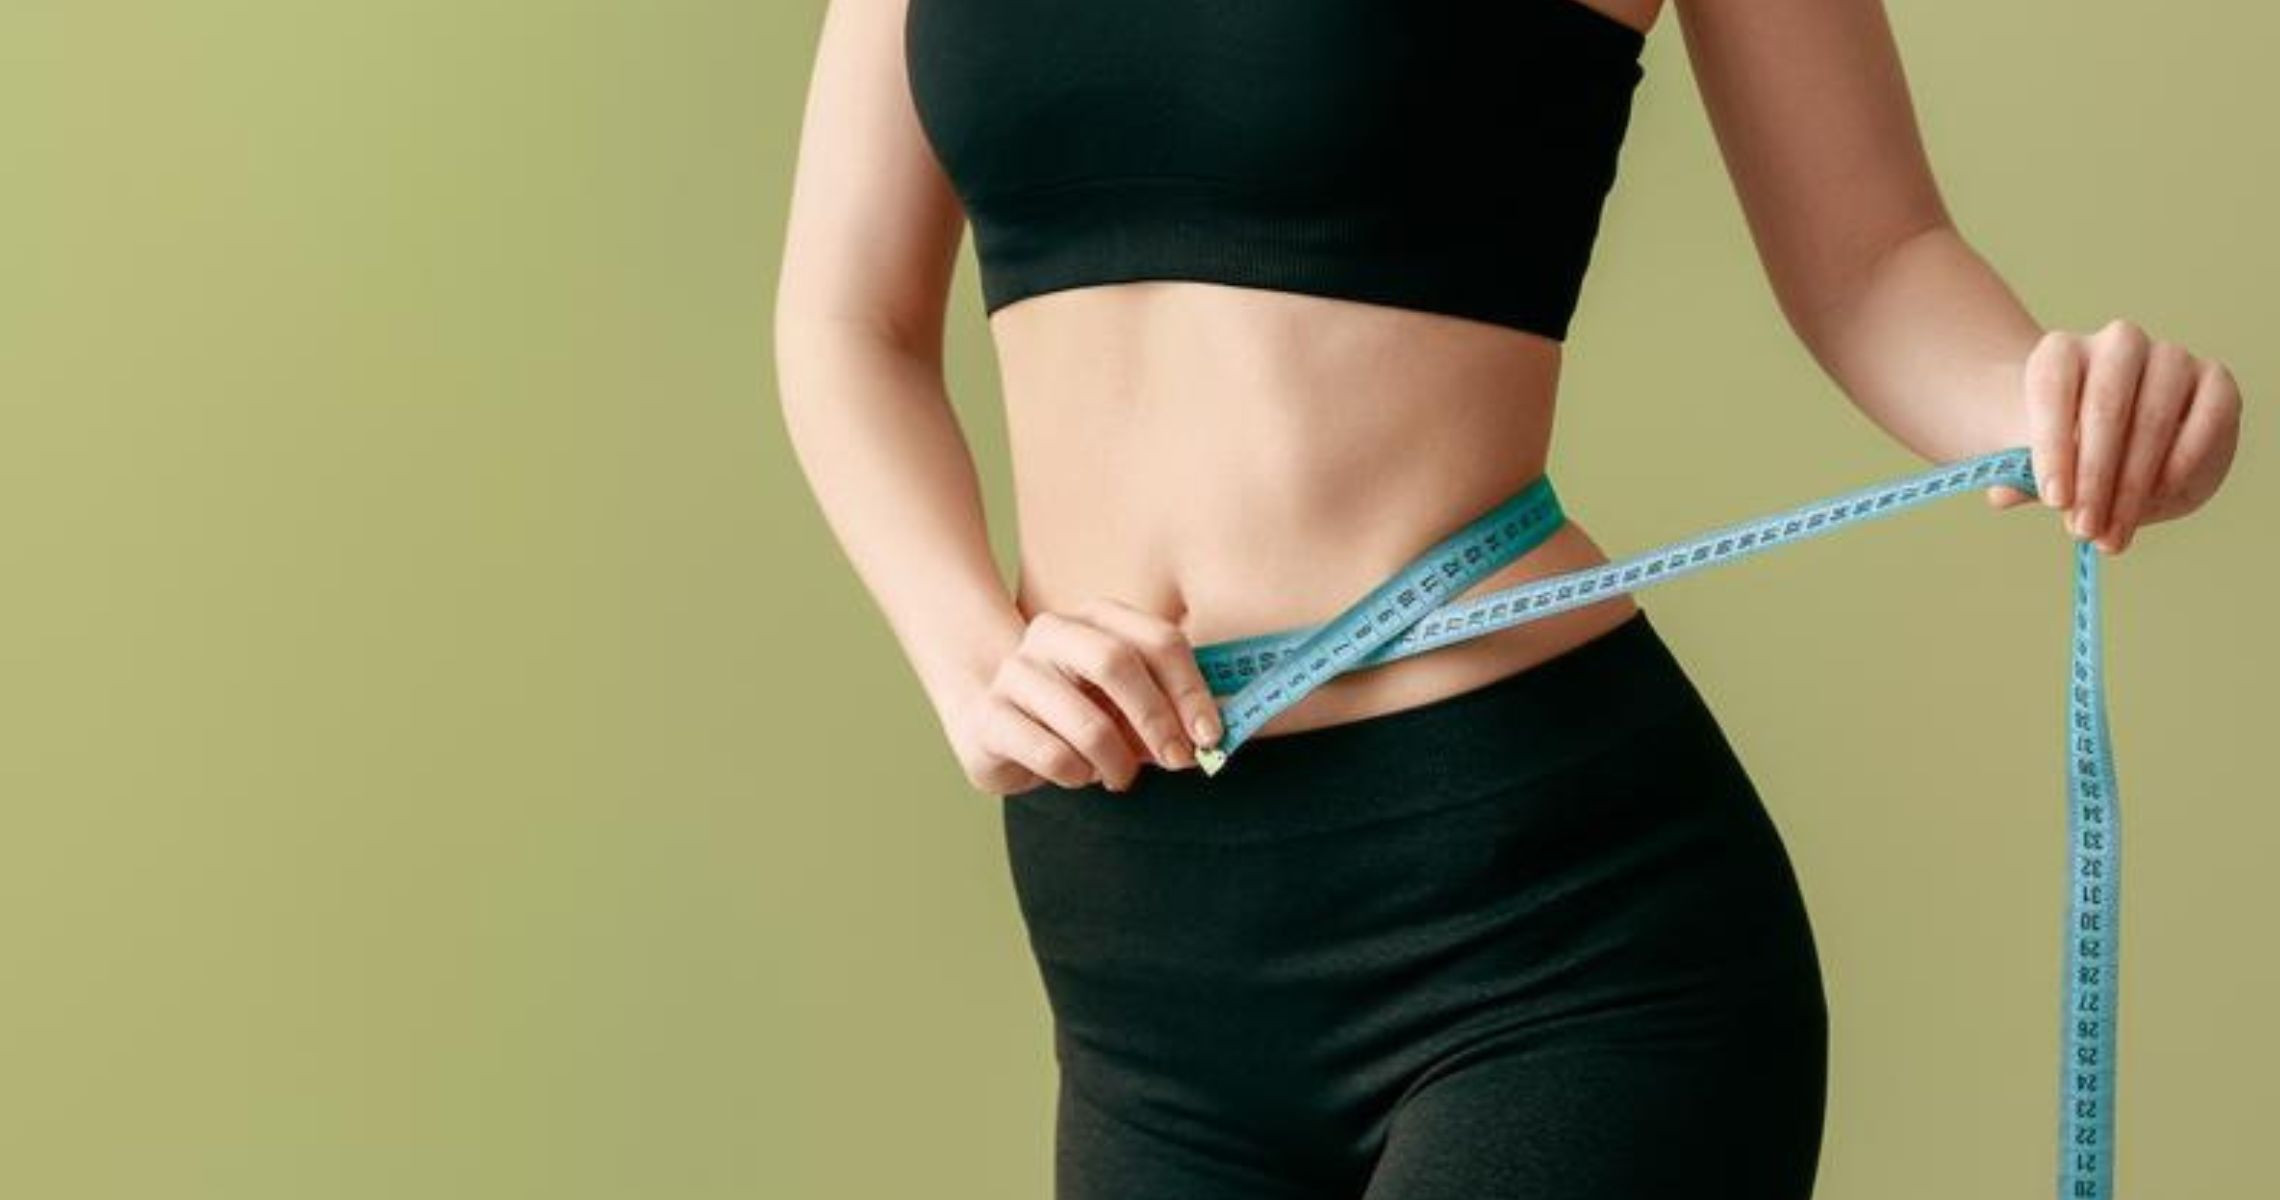 Chế độ ăn giảm mỡ bụng dưới hiệu quả